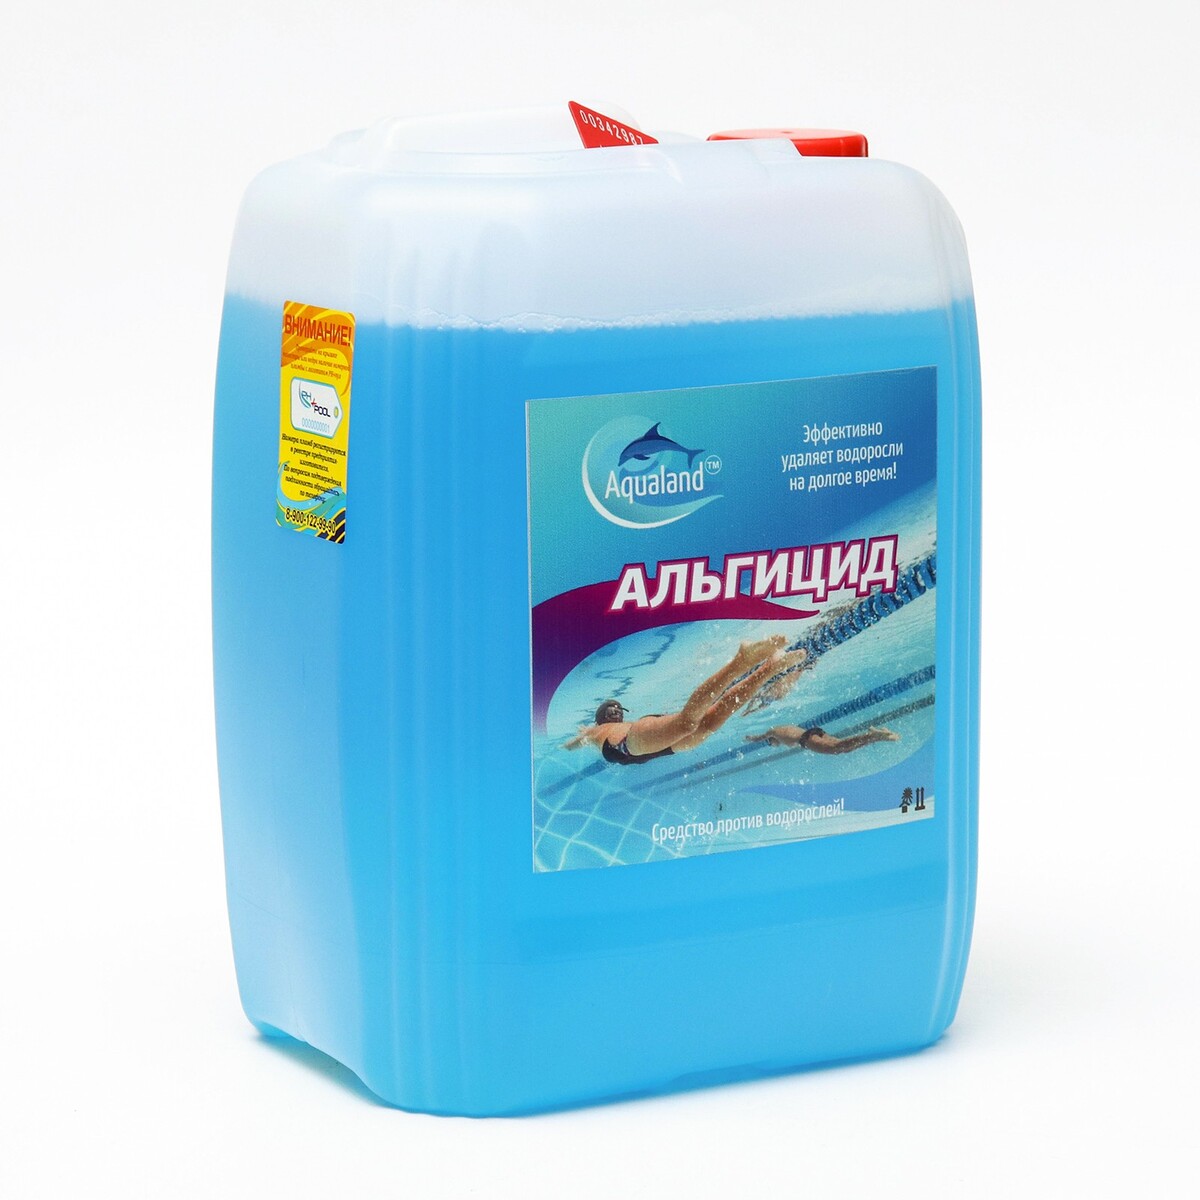 Средство против водорослей aqualand, альгицид, 5 л bayrol медленнорастворимый хлор для непрерывной дезинфекции воды chlorilong 200 1 кг